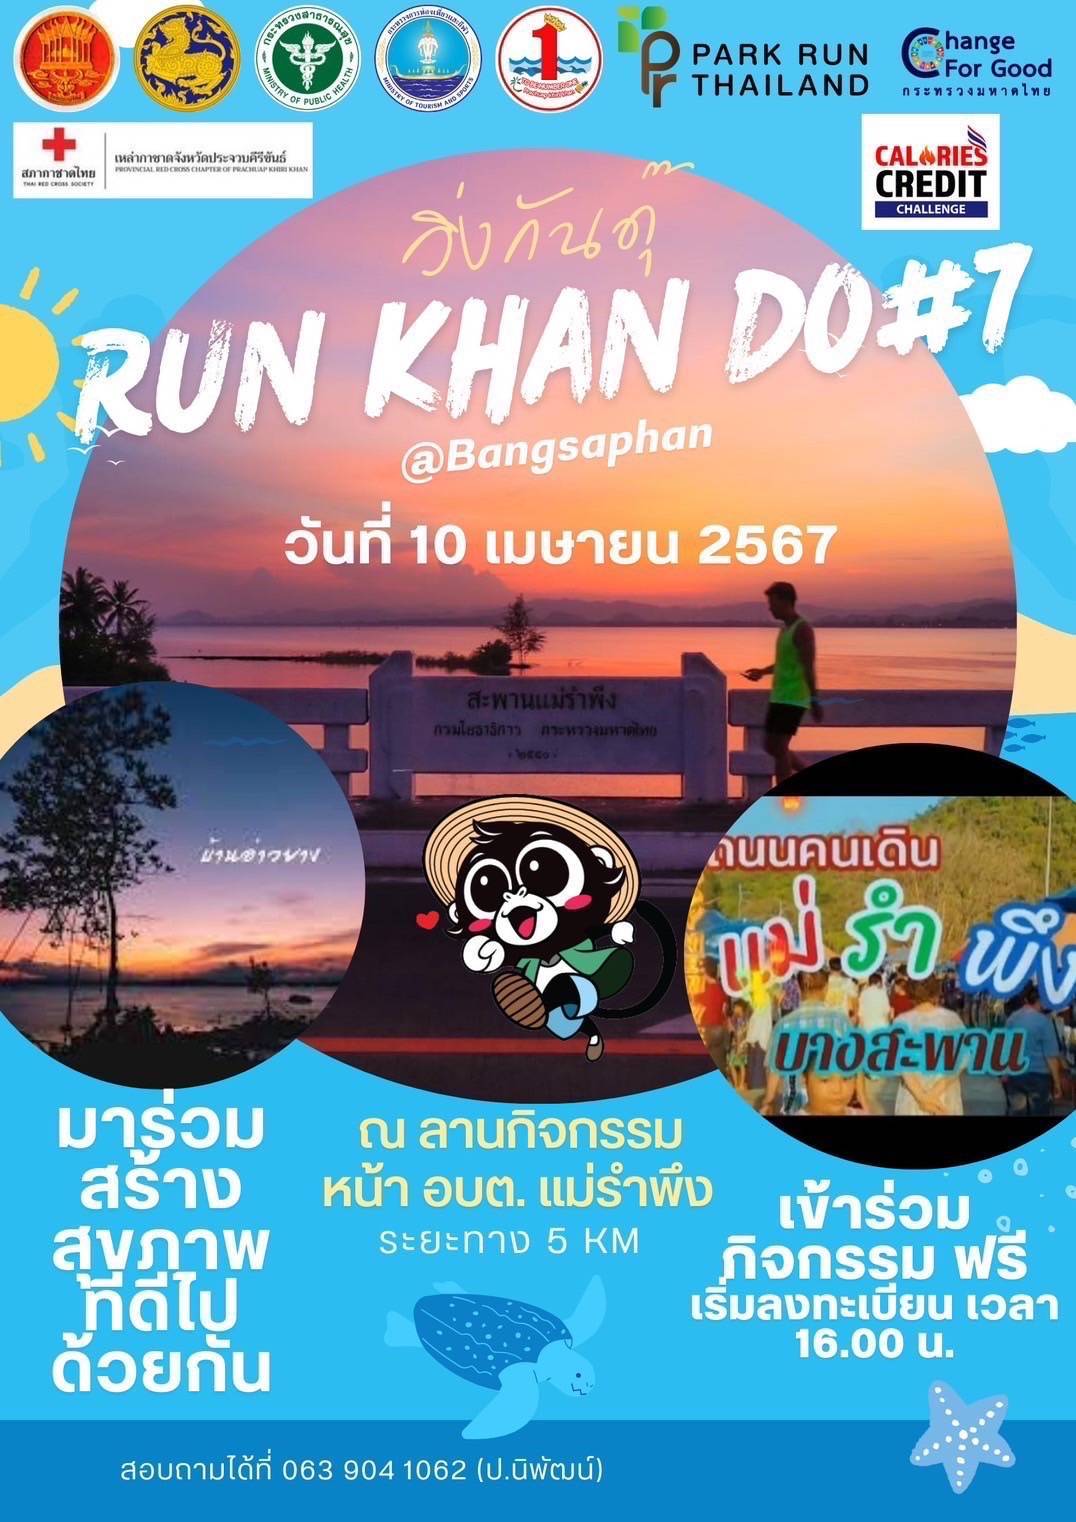 ประจวบคีรีขันธ์-อ.บางสะพาน เตรียมจัดกิจกรรม Run Khan Do “วิ่งกันดุ๊” Track 7 “วิ่งเก็บตะวัน@บางสะพาน”